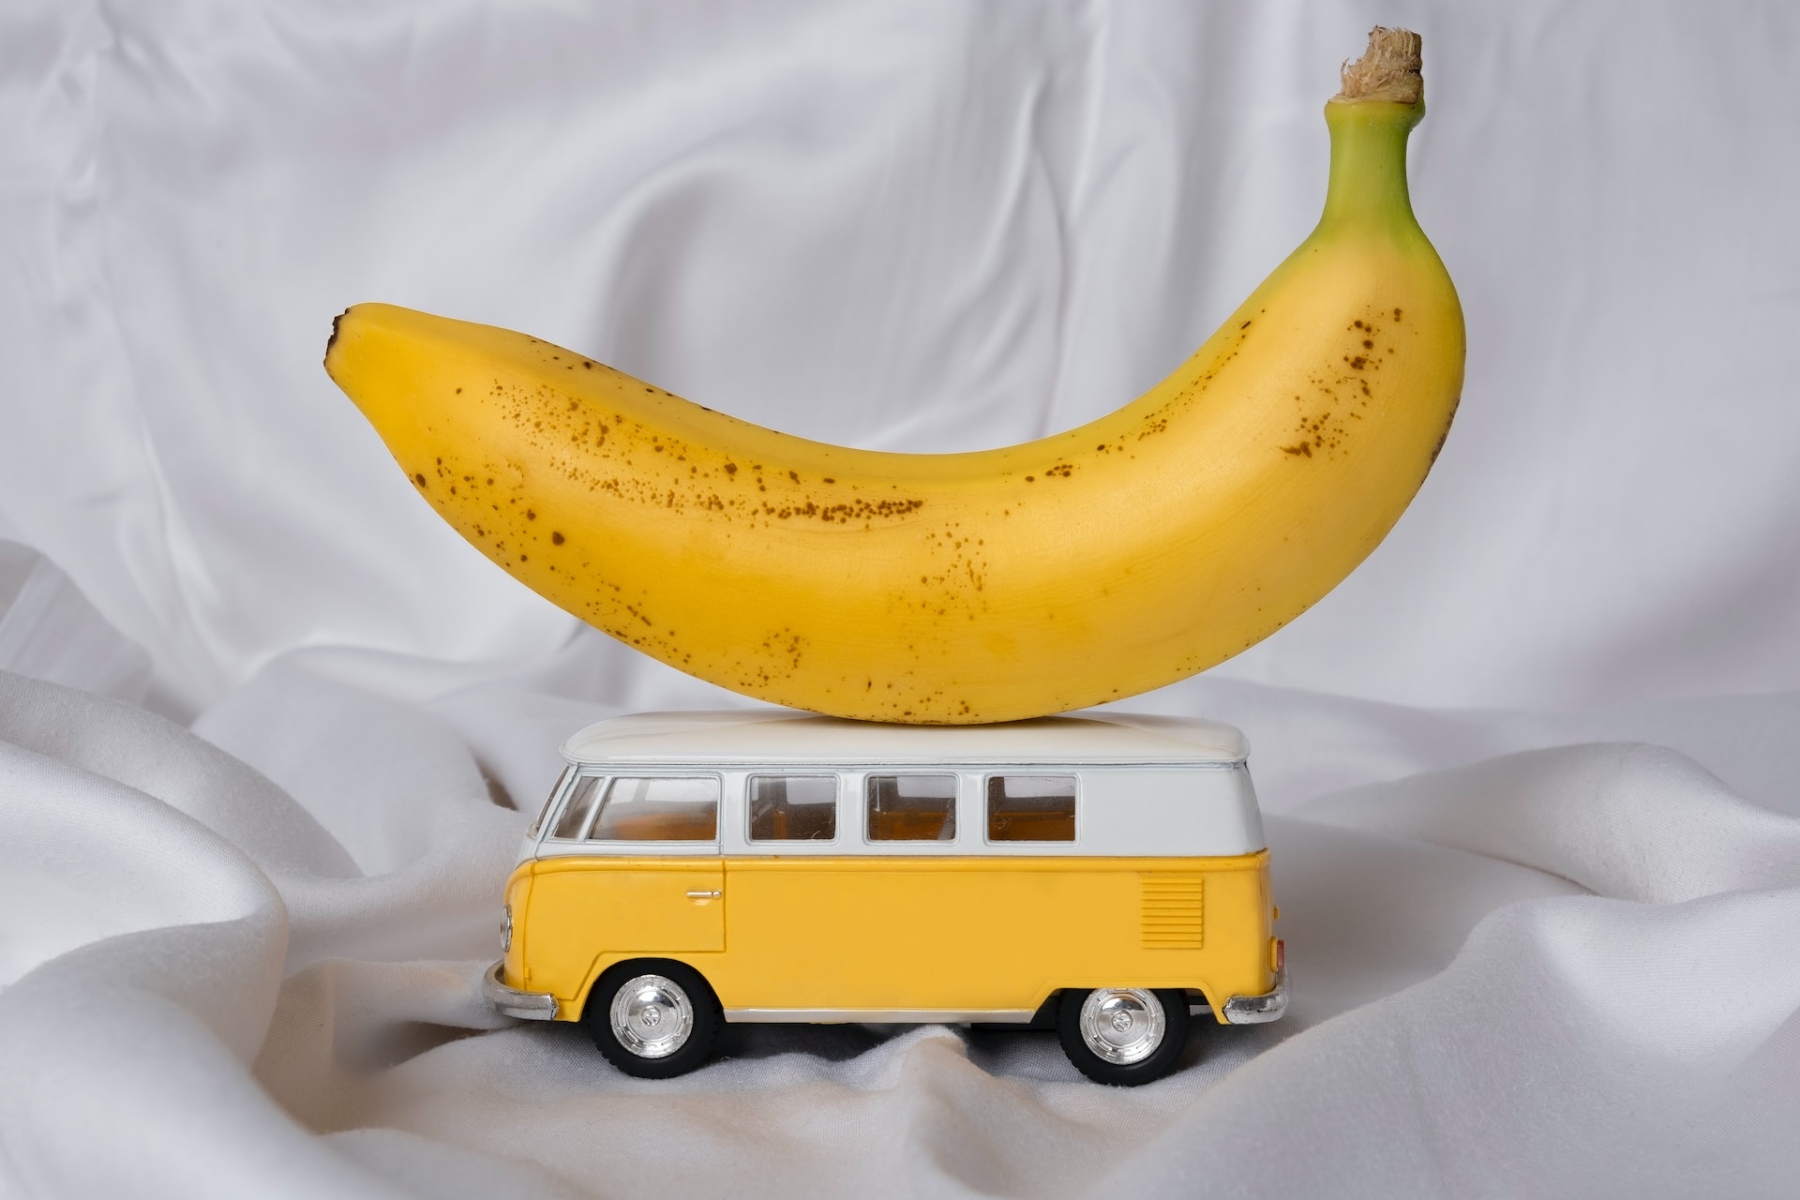 Μπανάνα: Για ποιους λόγους πρέπει να τρώμε μπανάνα κάθε εβδομάδα;